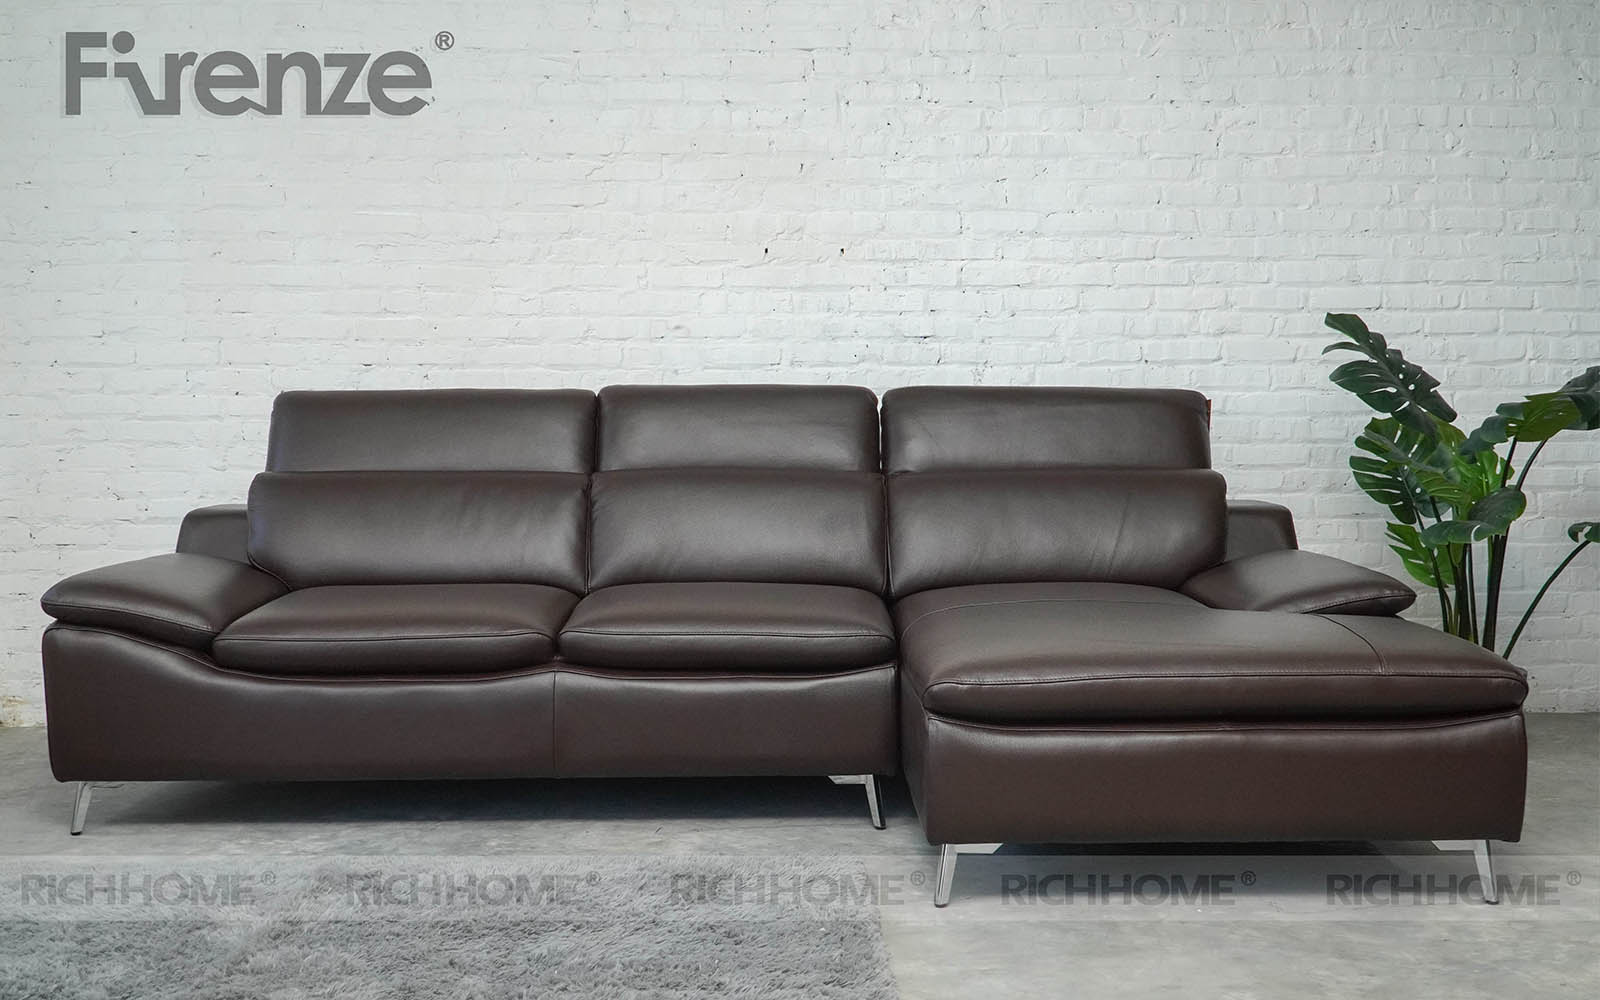 Hướng dẫn cách chọn kích thước sofa phù hợp cho từng không gian - Ảnh 3